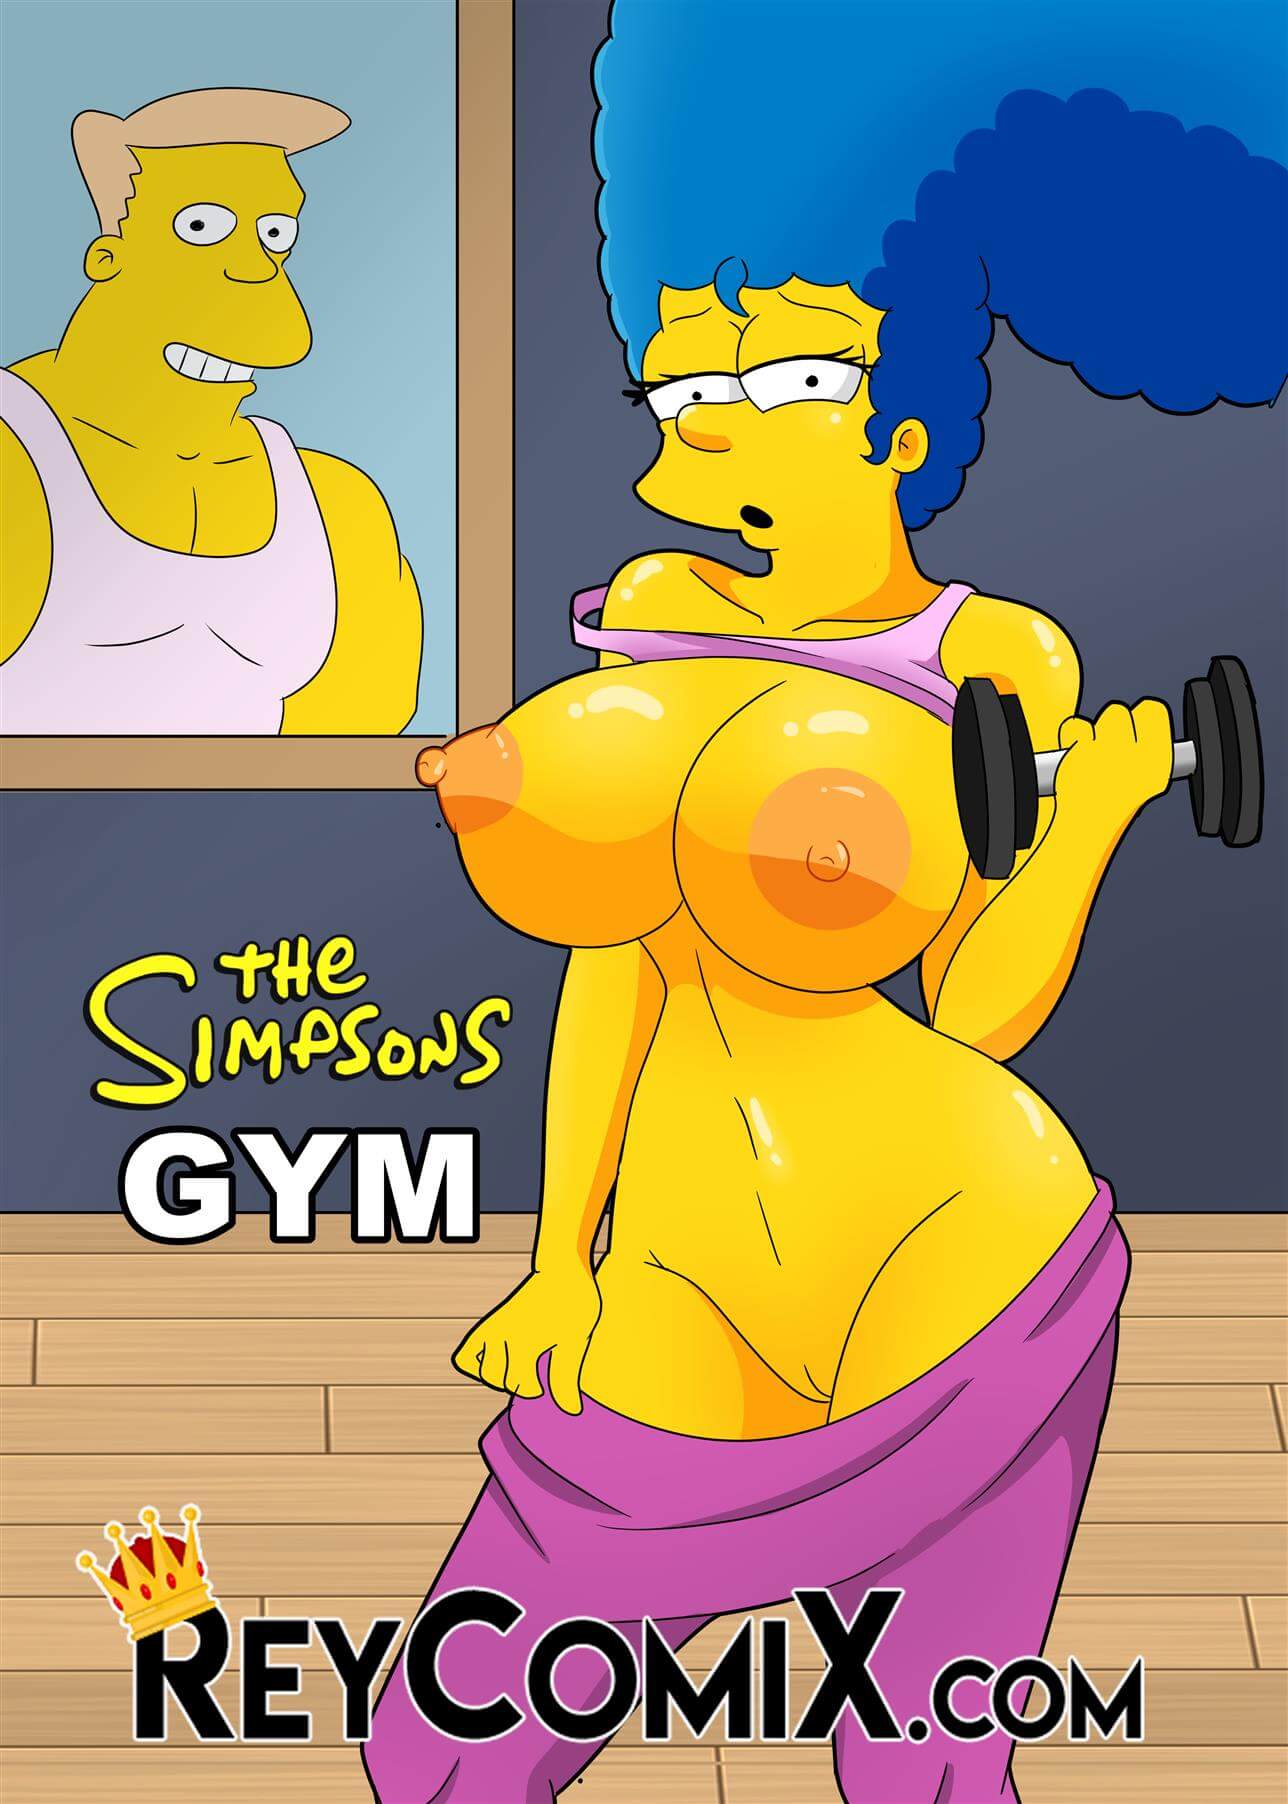 Os Simpsons Marge fazendo Sexo na Academia